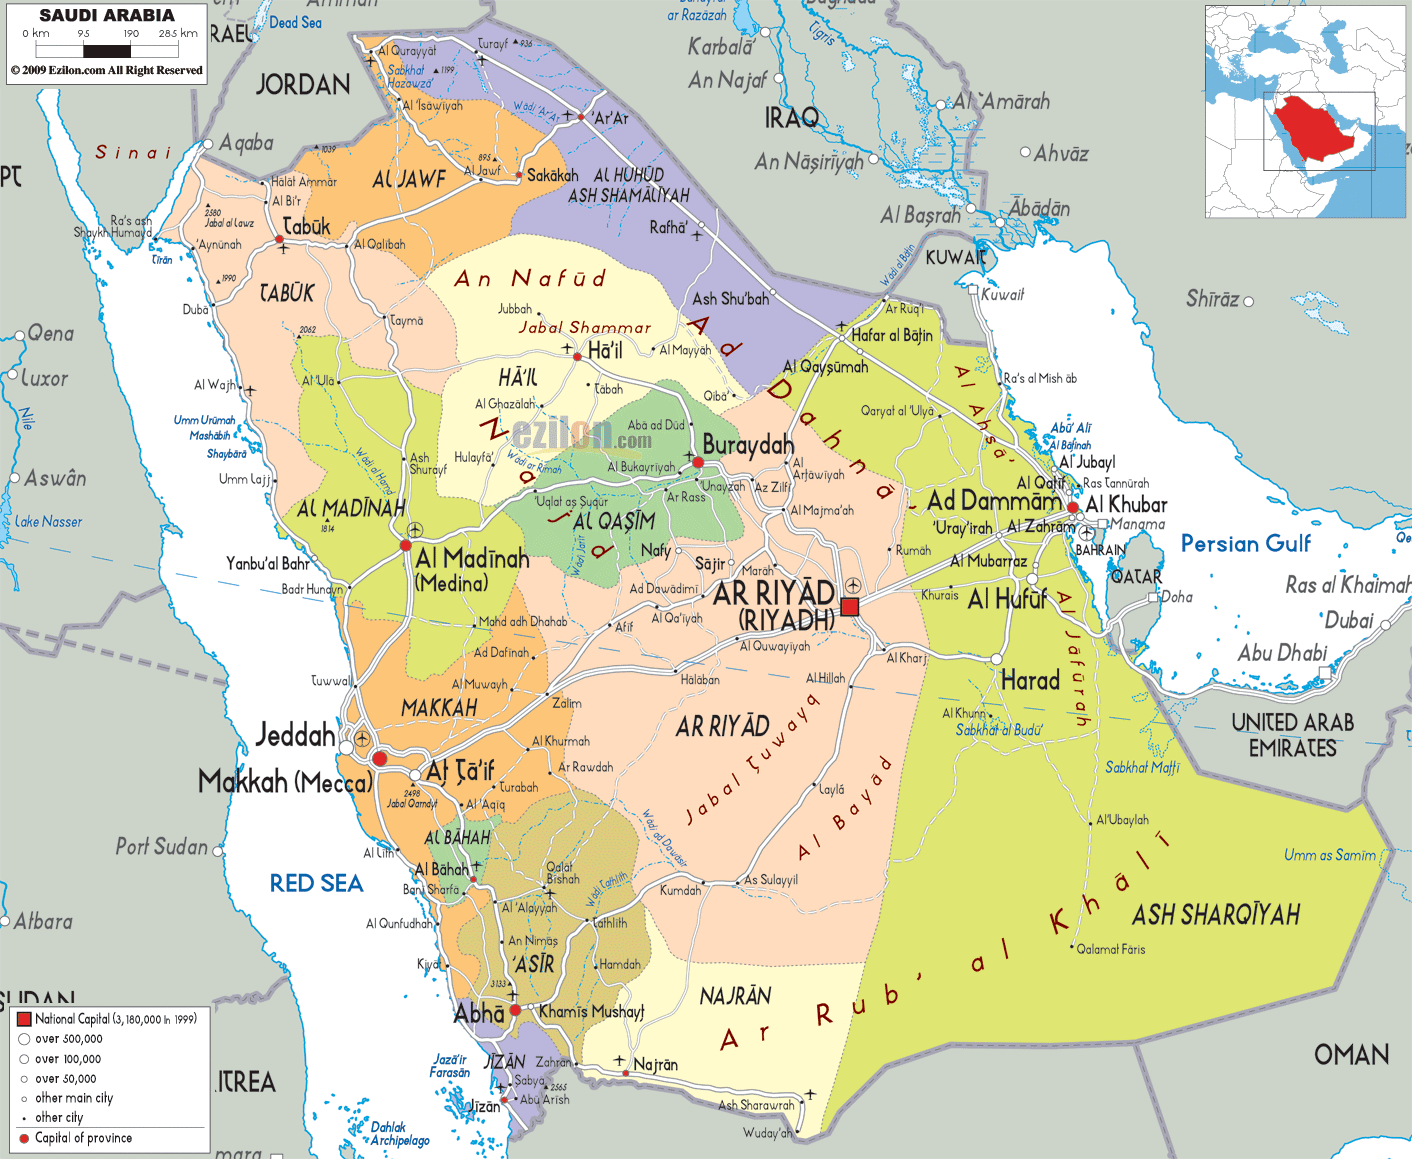 Map of Saudi Arabia_1.jpg